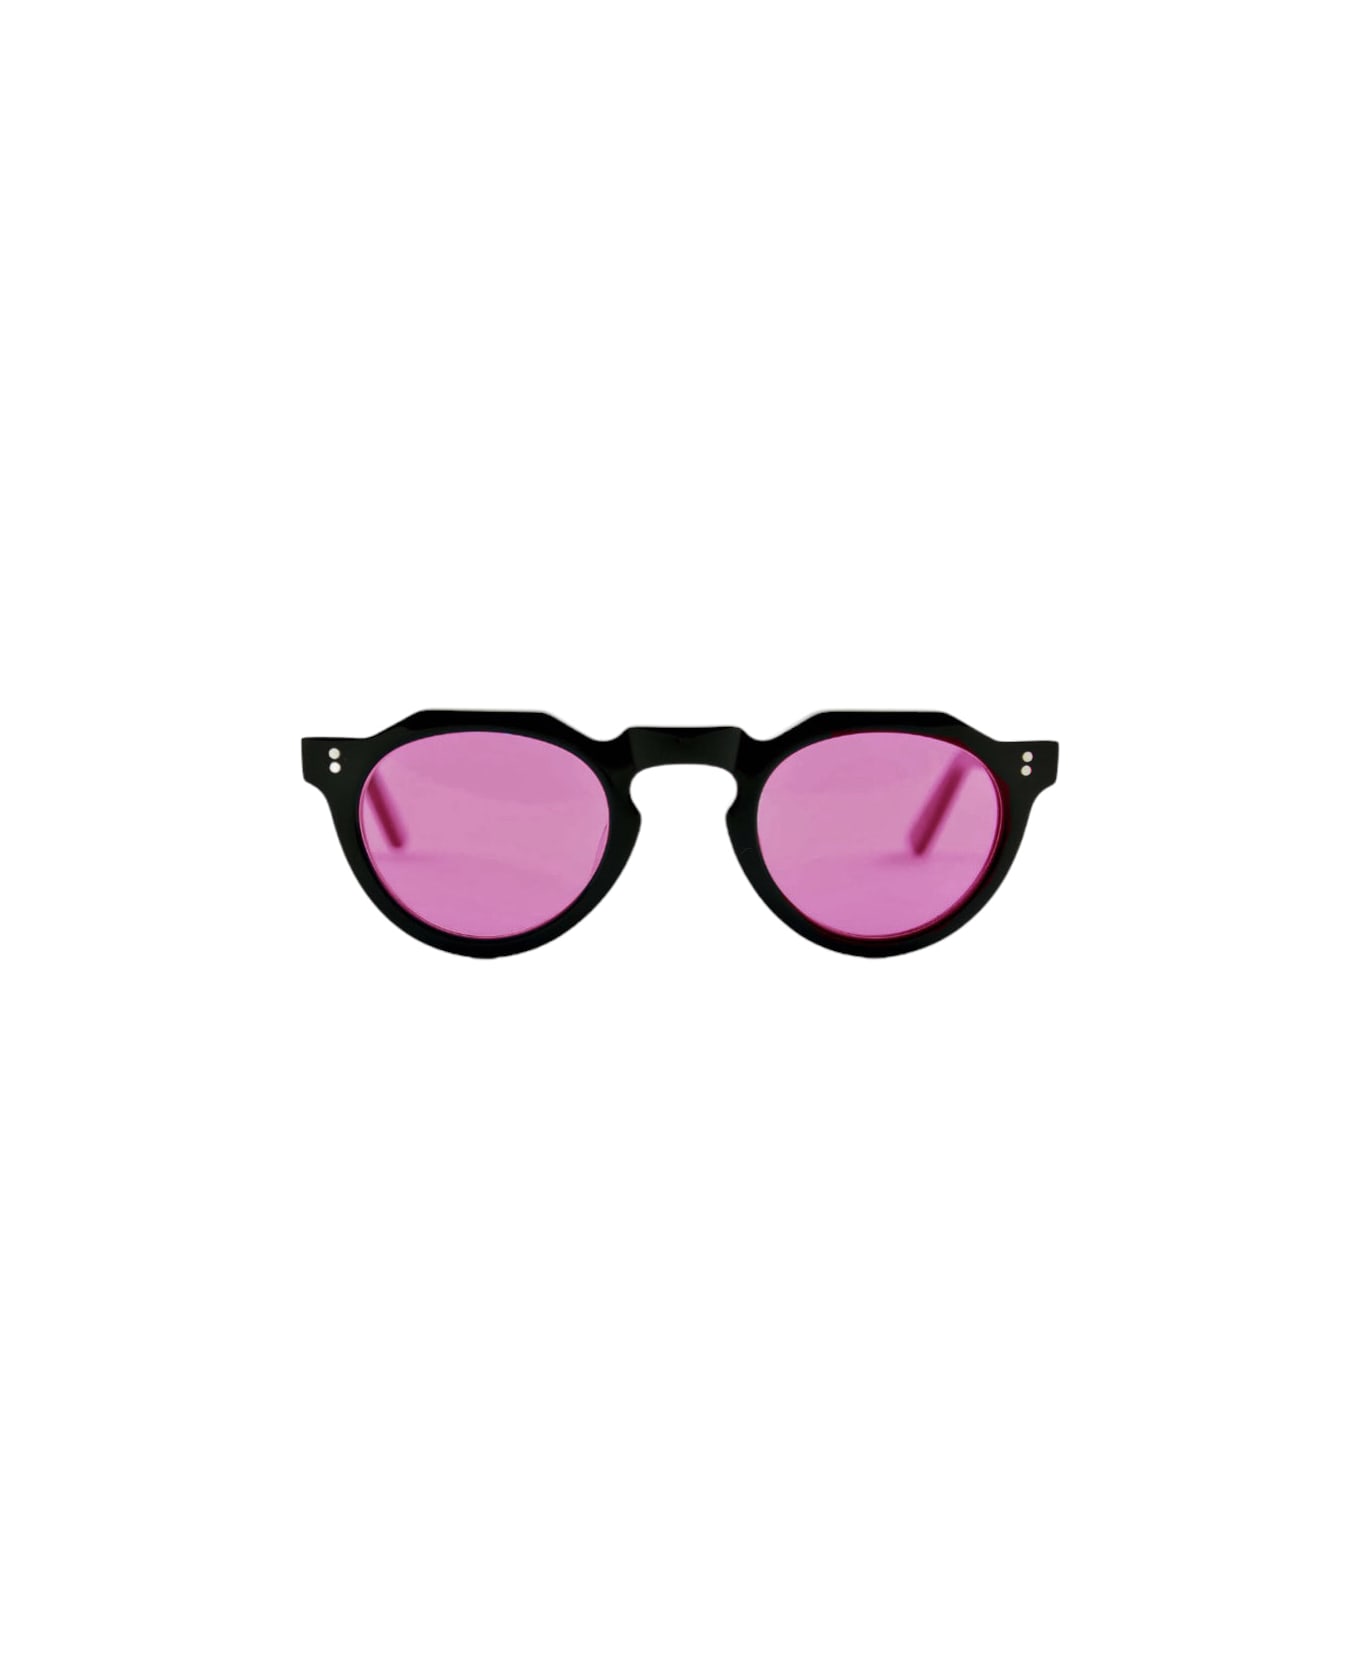 Lesca Pica Sunglasses サングラス